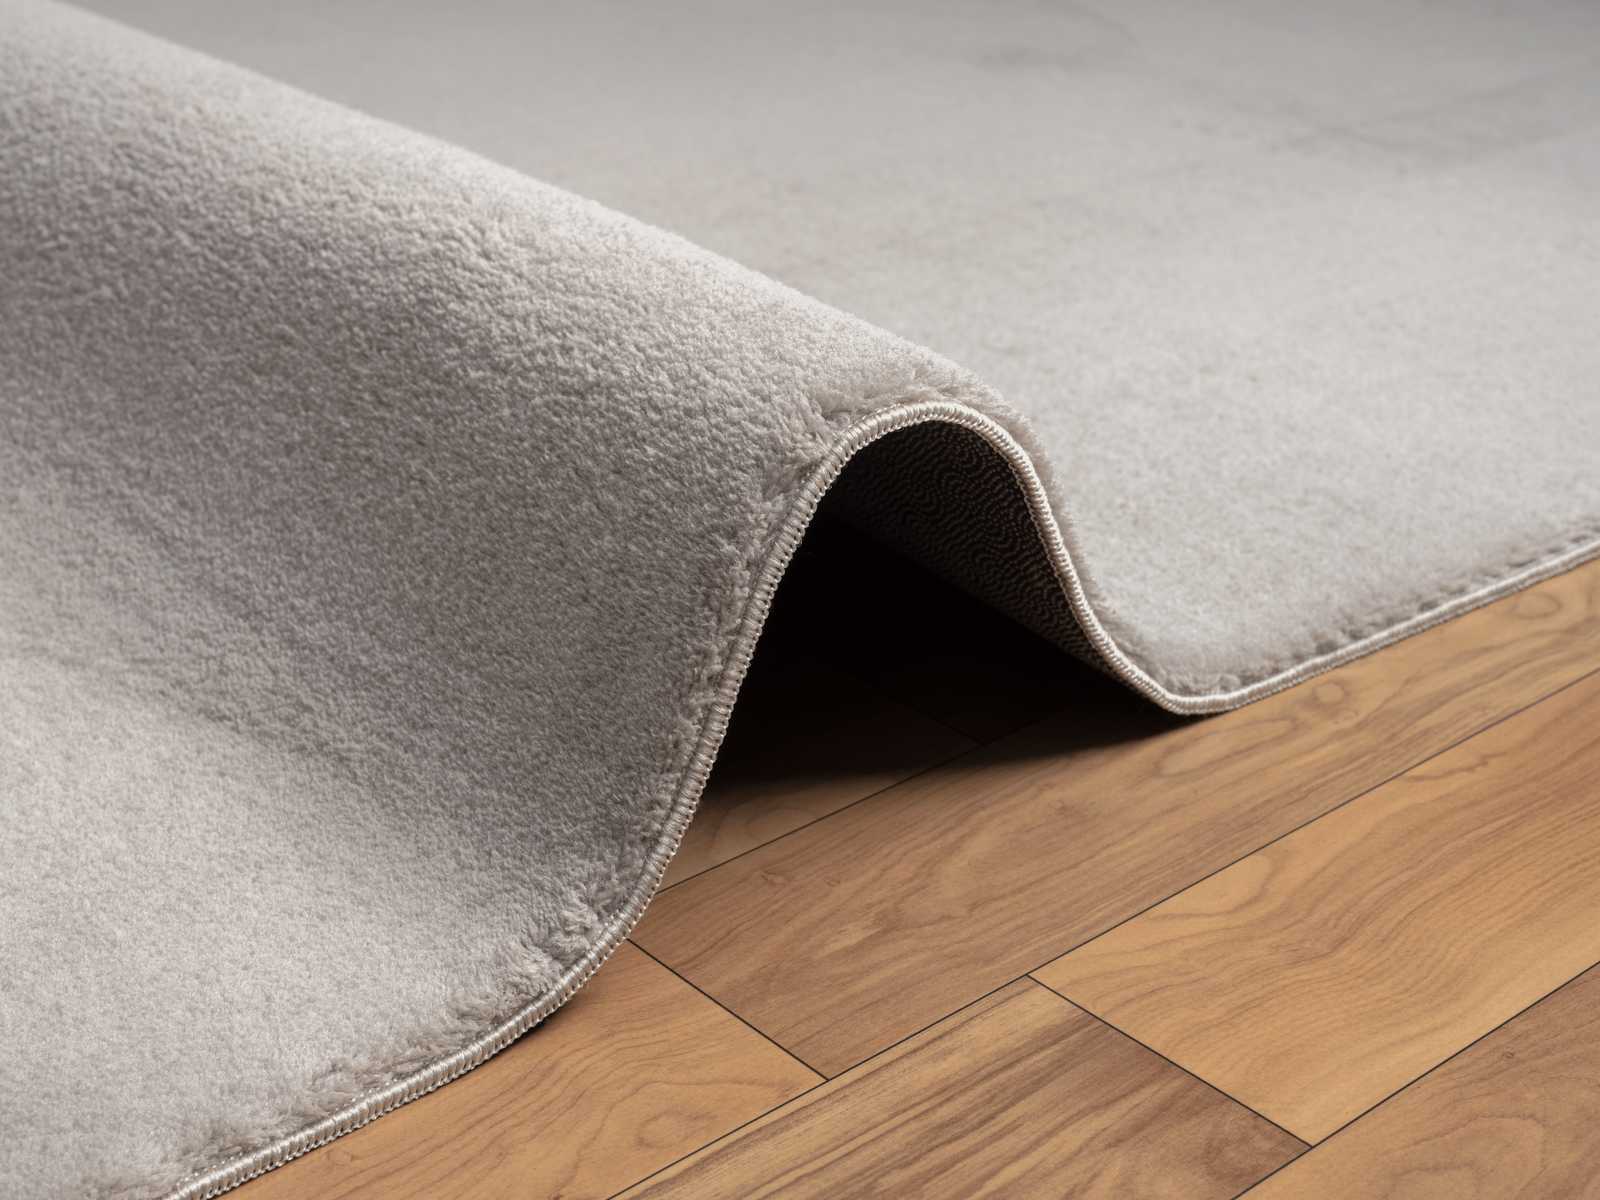             Modischer Runder Hochflor Teppich in Sand – Ø 120 cm
        